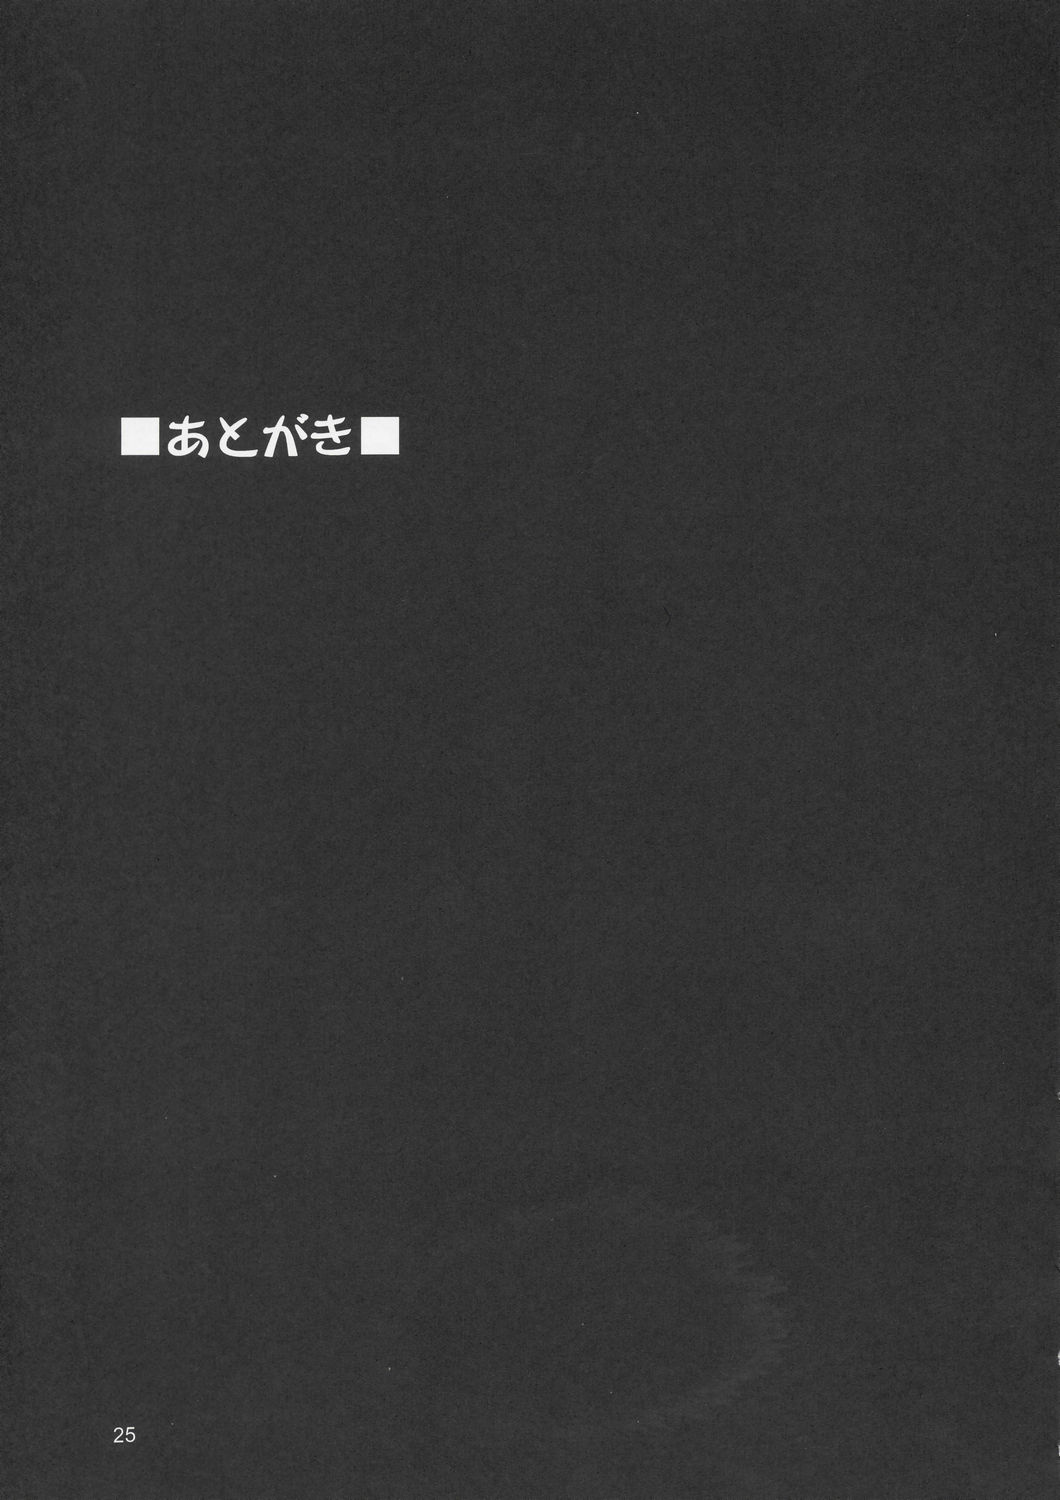 (C66) [GOLD RUSH (鈴木あどれす)] Edition (風) (機動戦士ガンダムSEED)